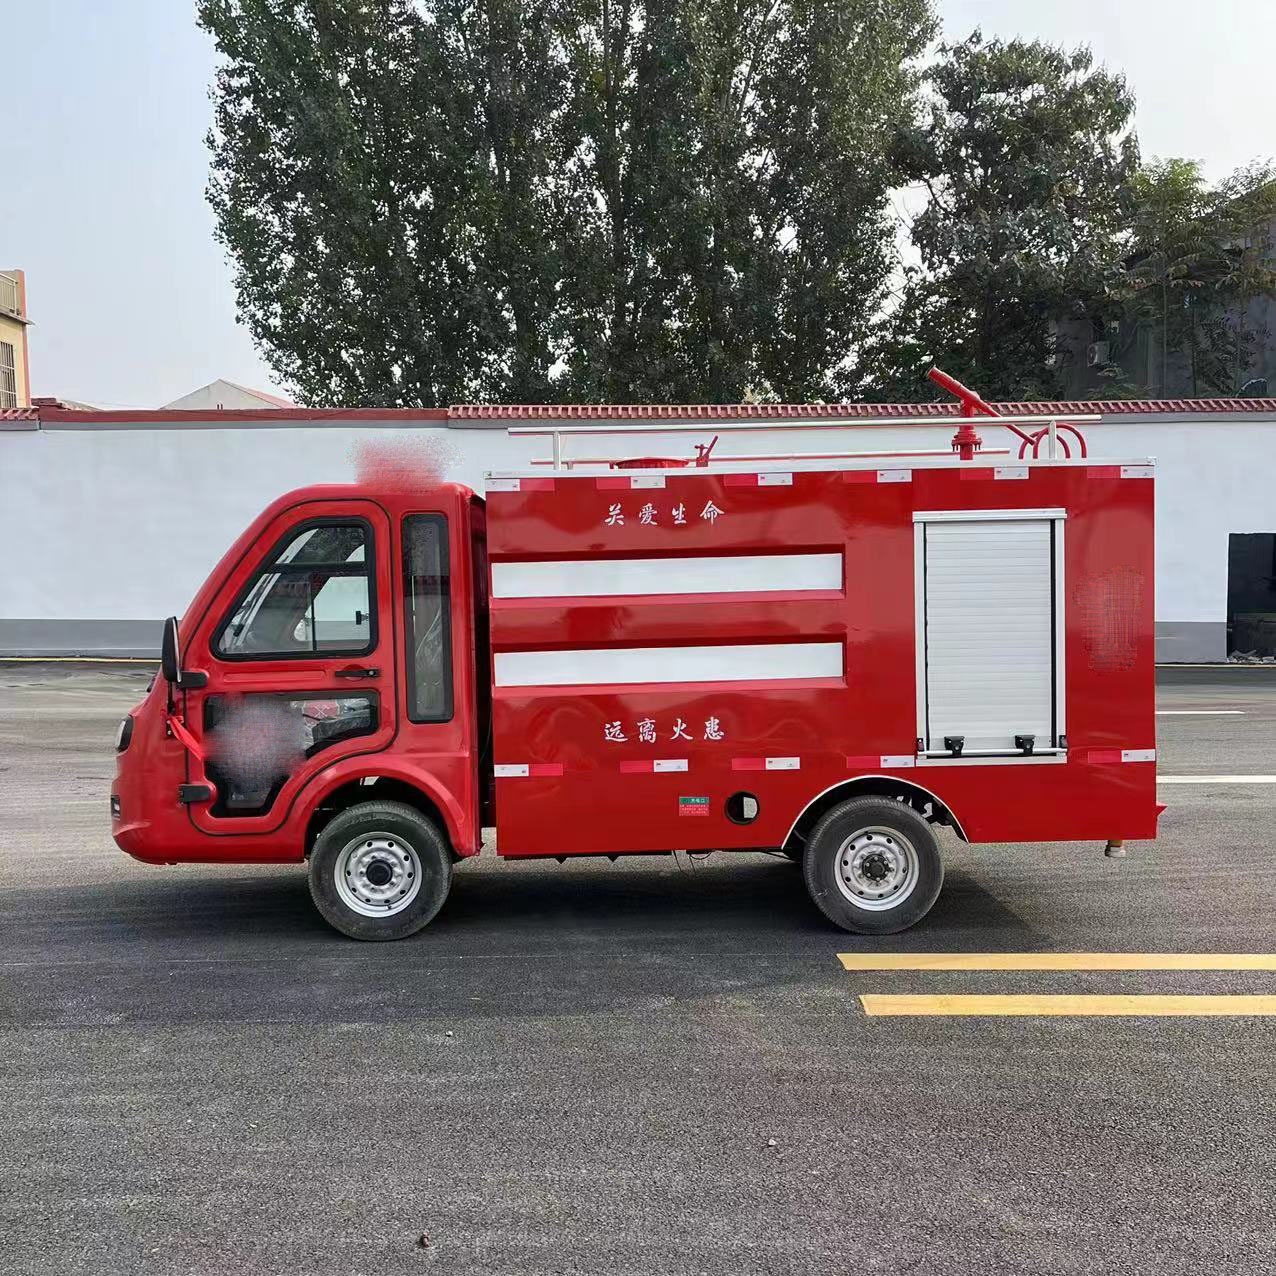 微型消防车 牛头型电动消防洒水车 装自吸水泵 电驱动免加油节能 永固威图片